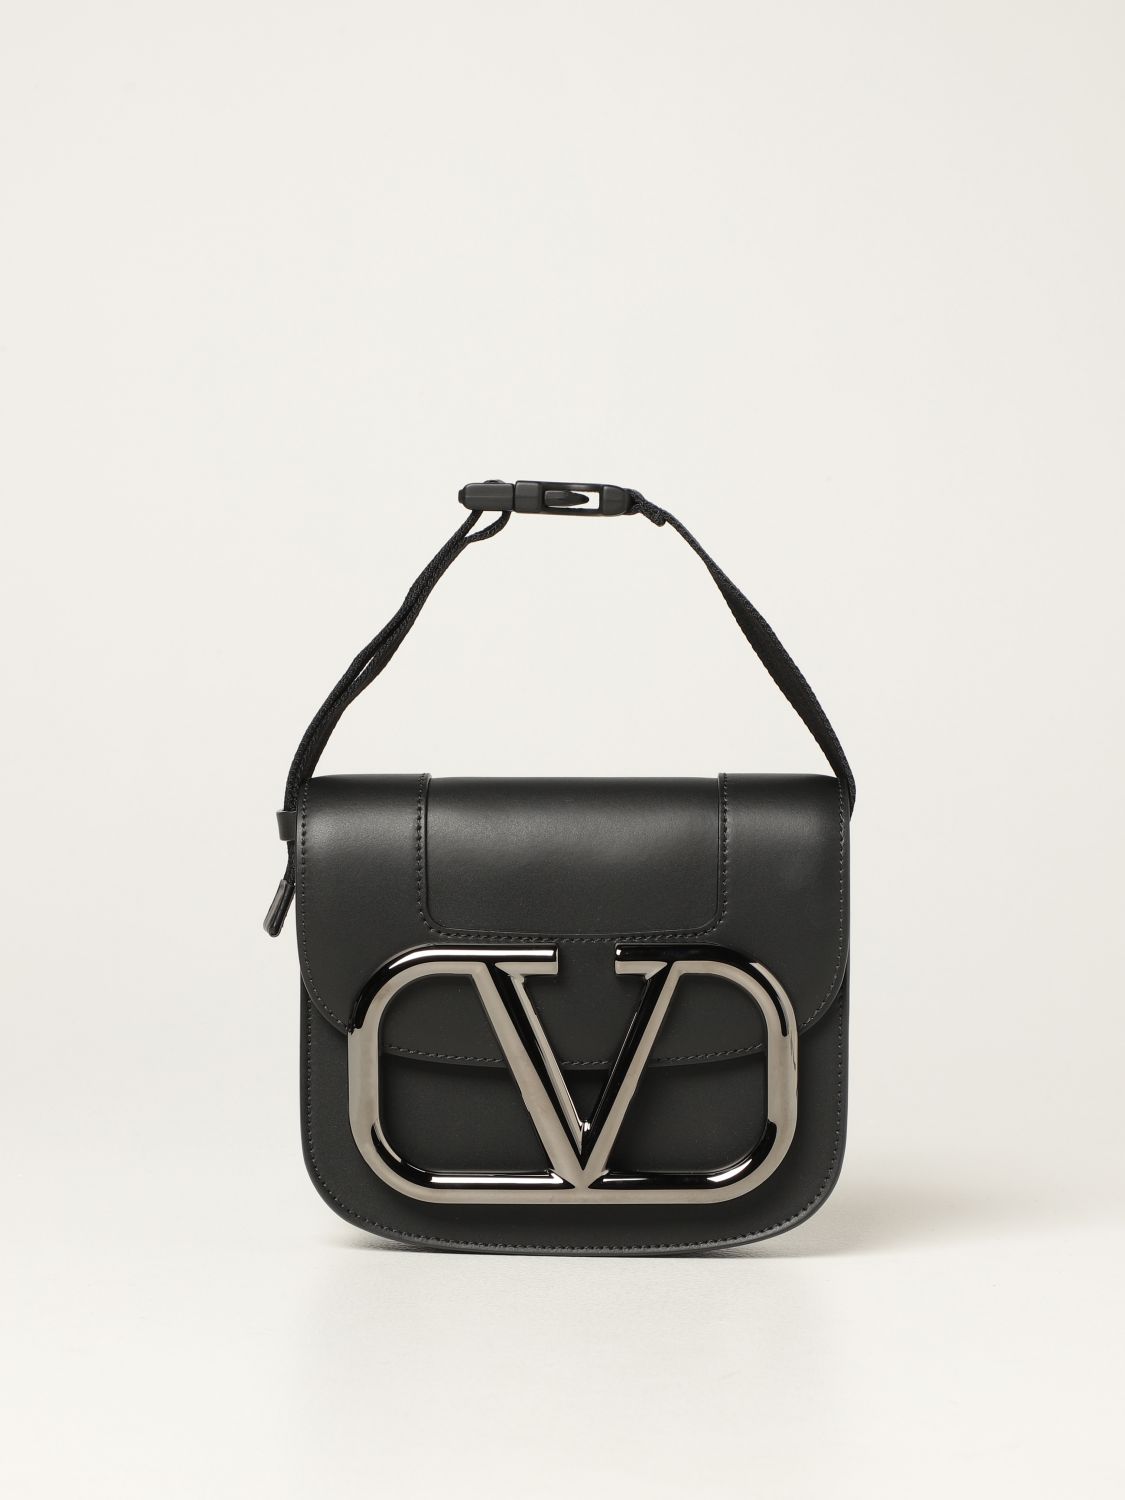 VALENTINO GARAVANI: Supervee leather shoulder bag - Black